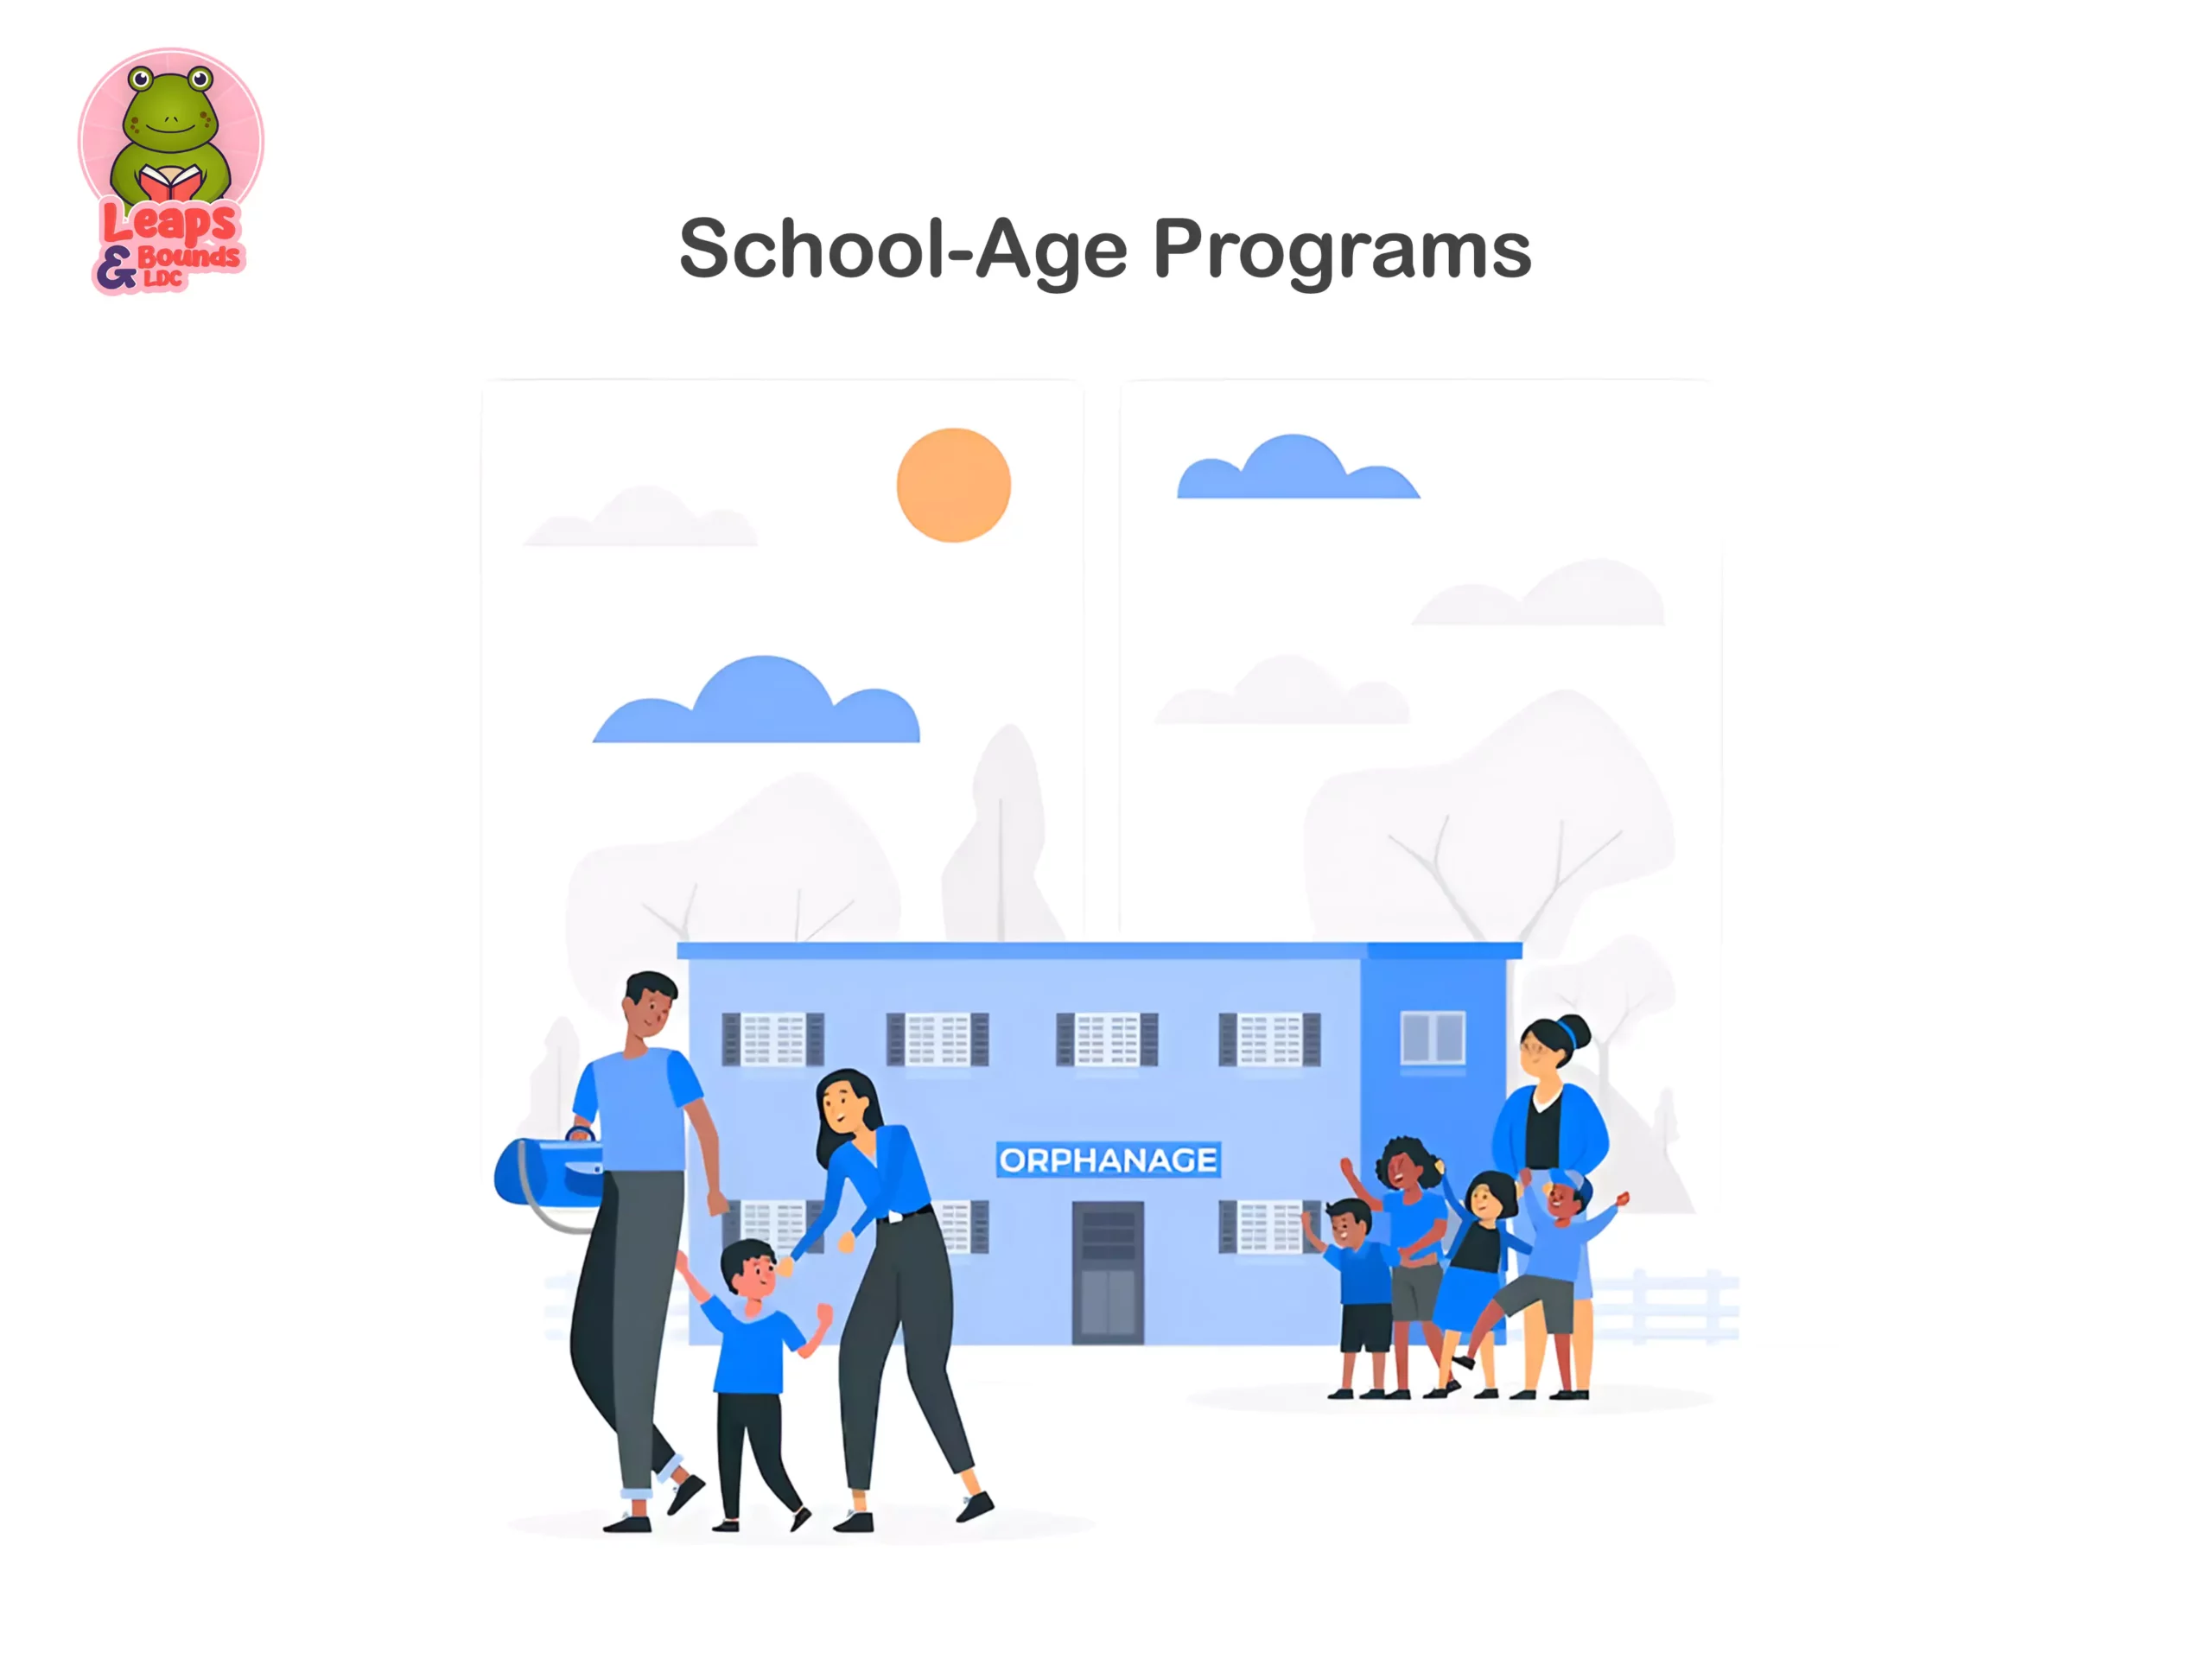 School-Age Programs